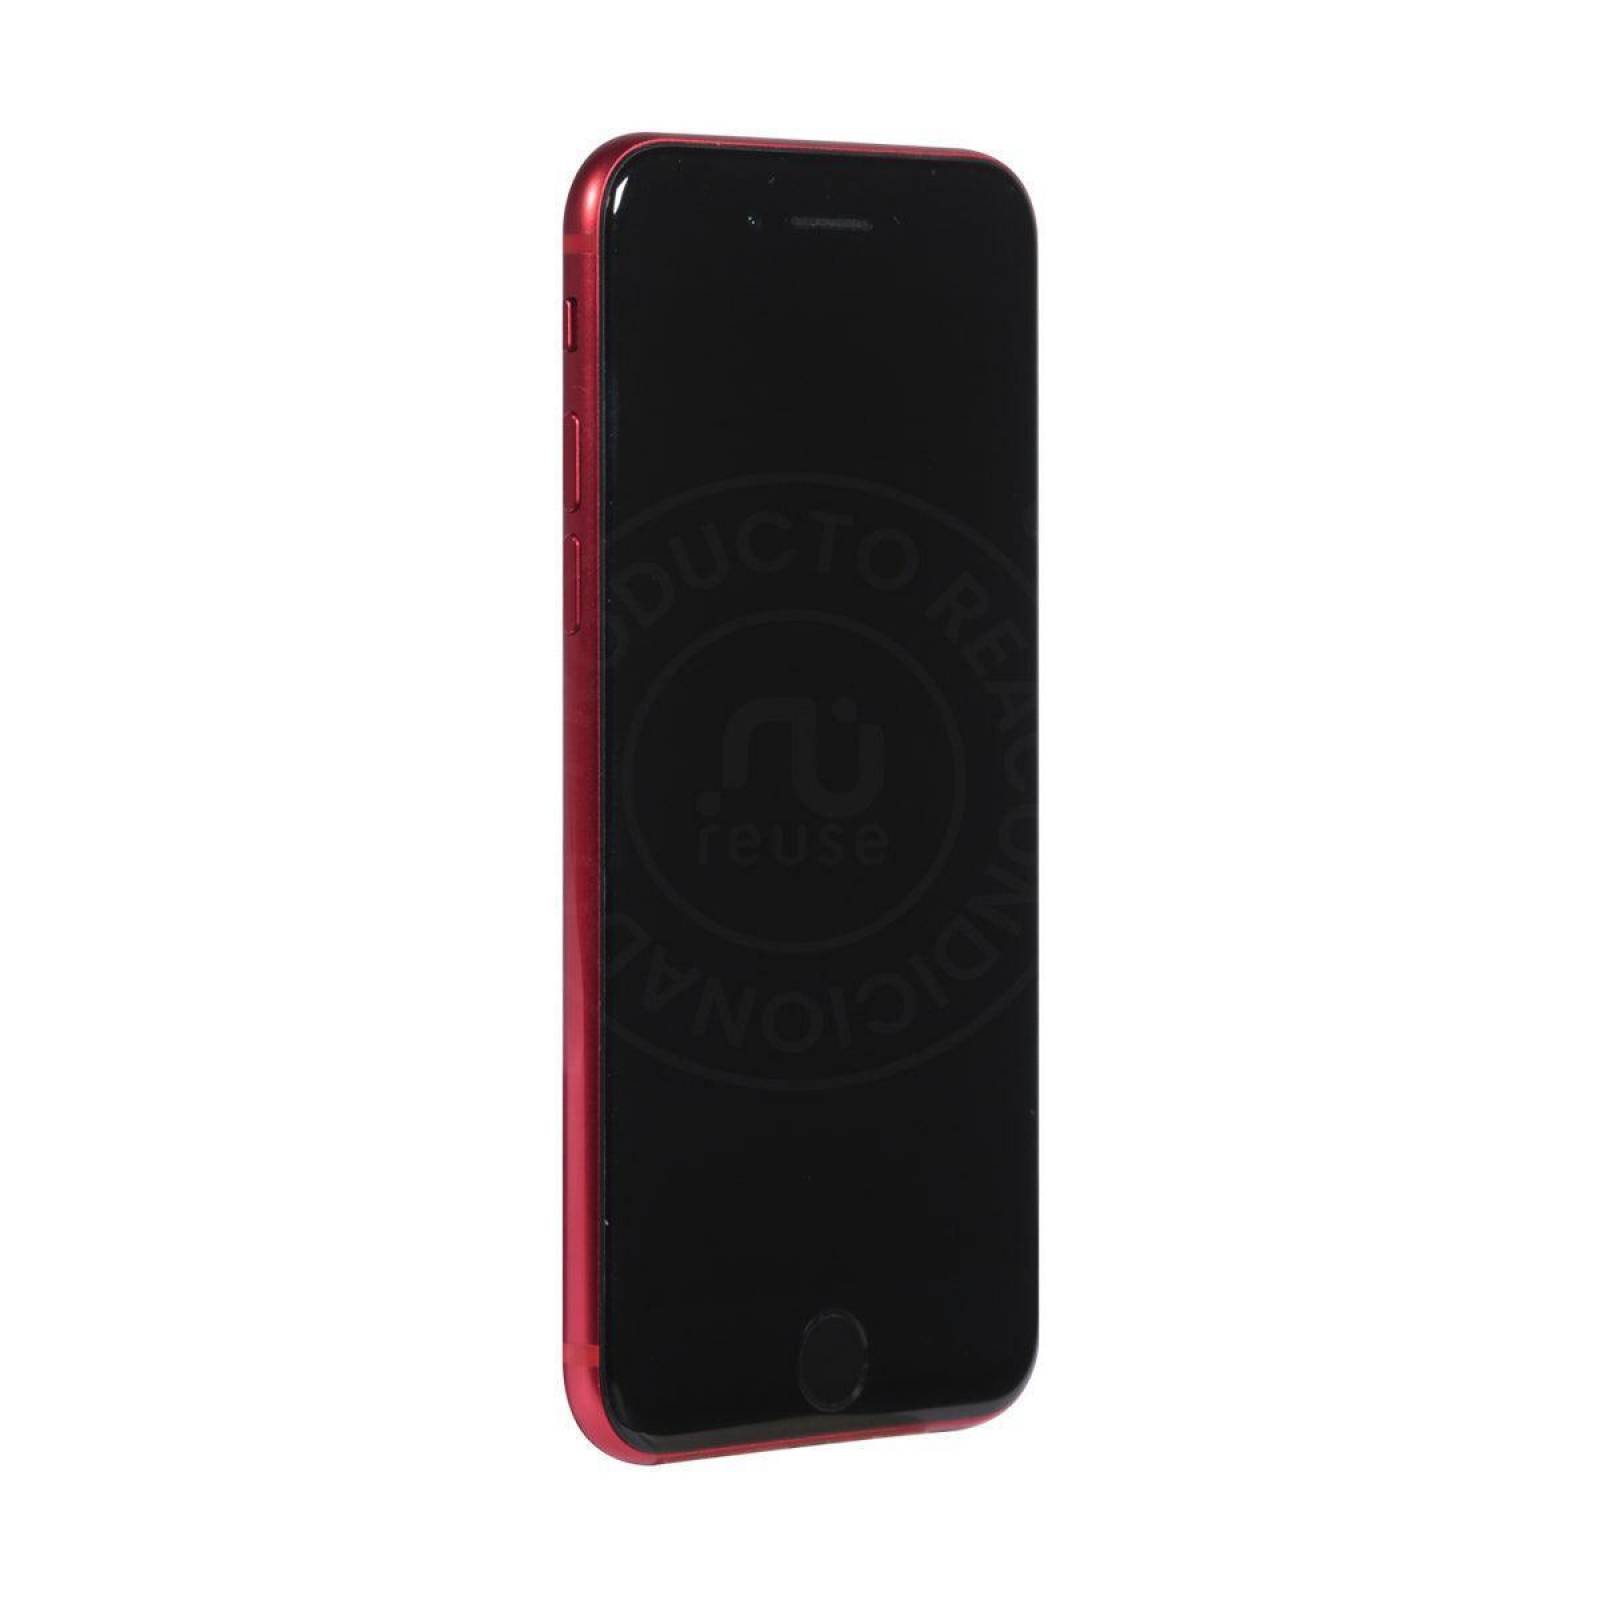 Apple iPhone SE 2020 128GB Rojo Reacondicionado Grado A 